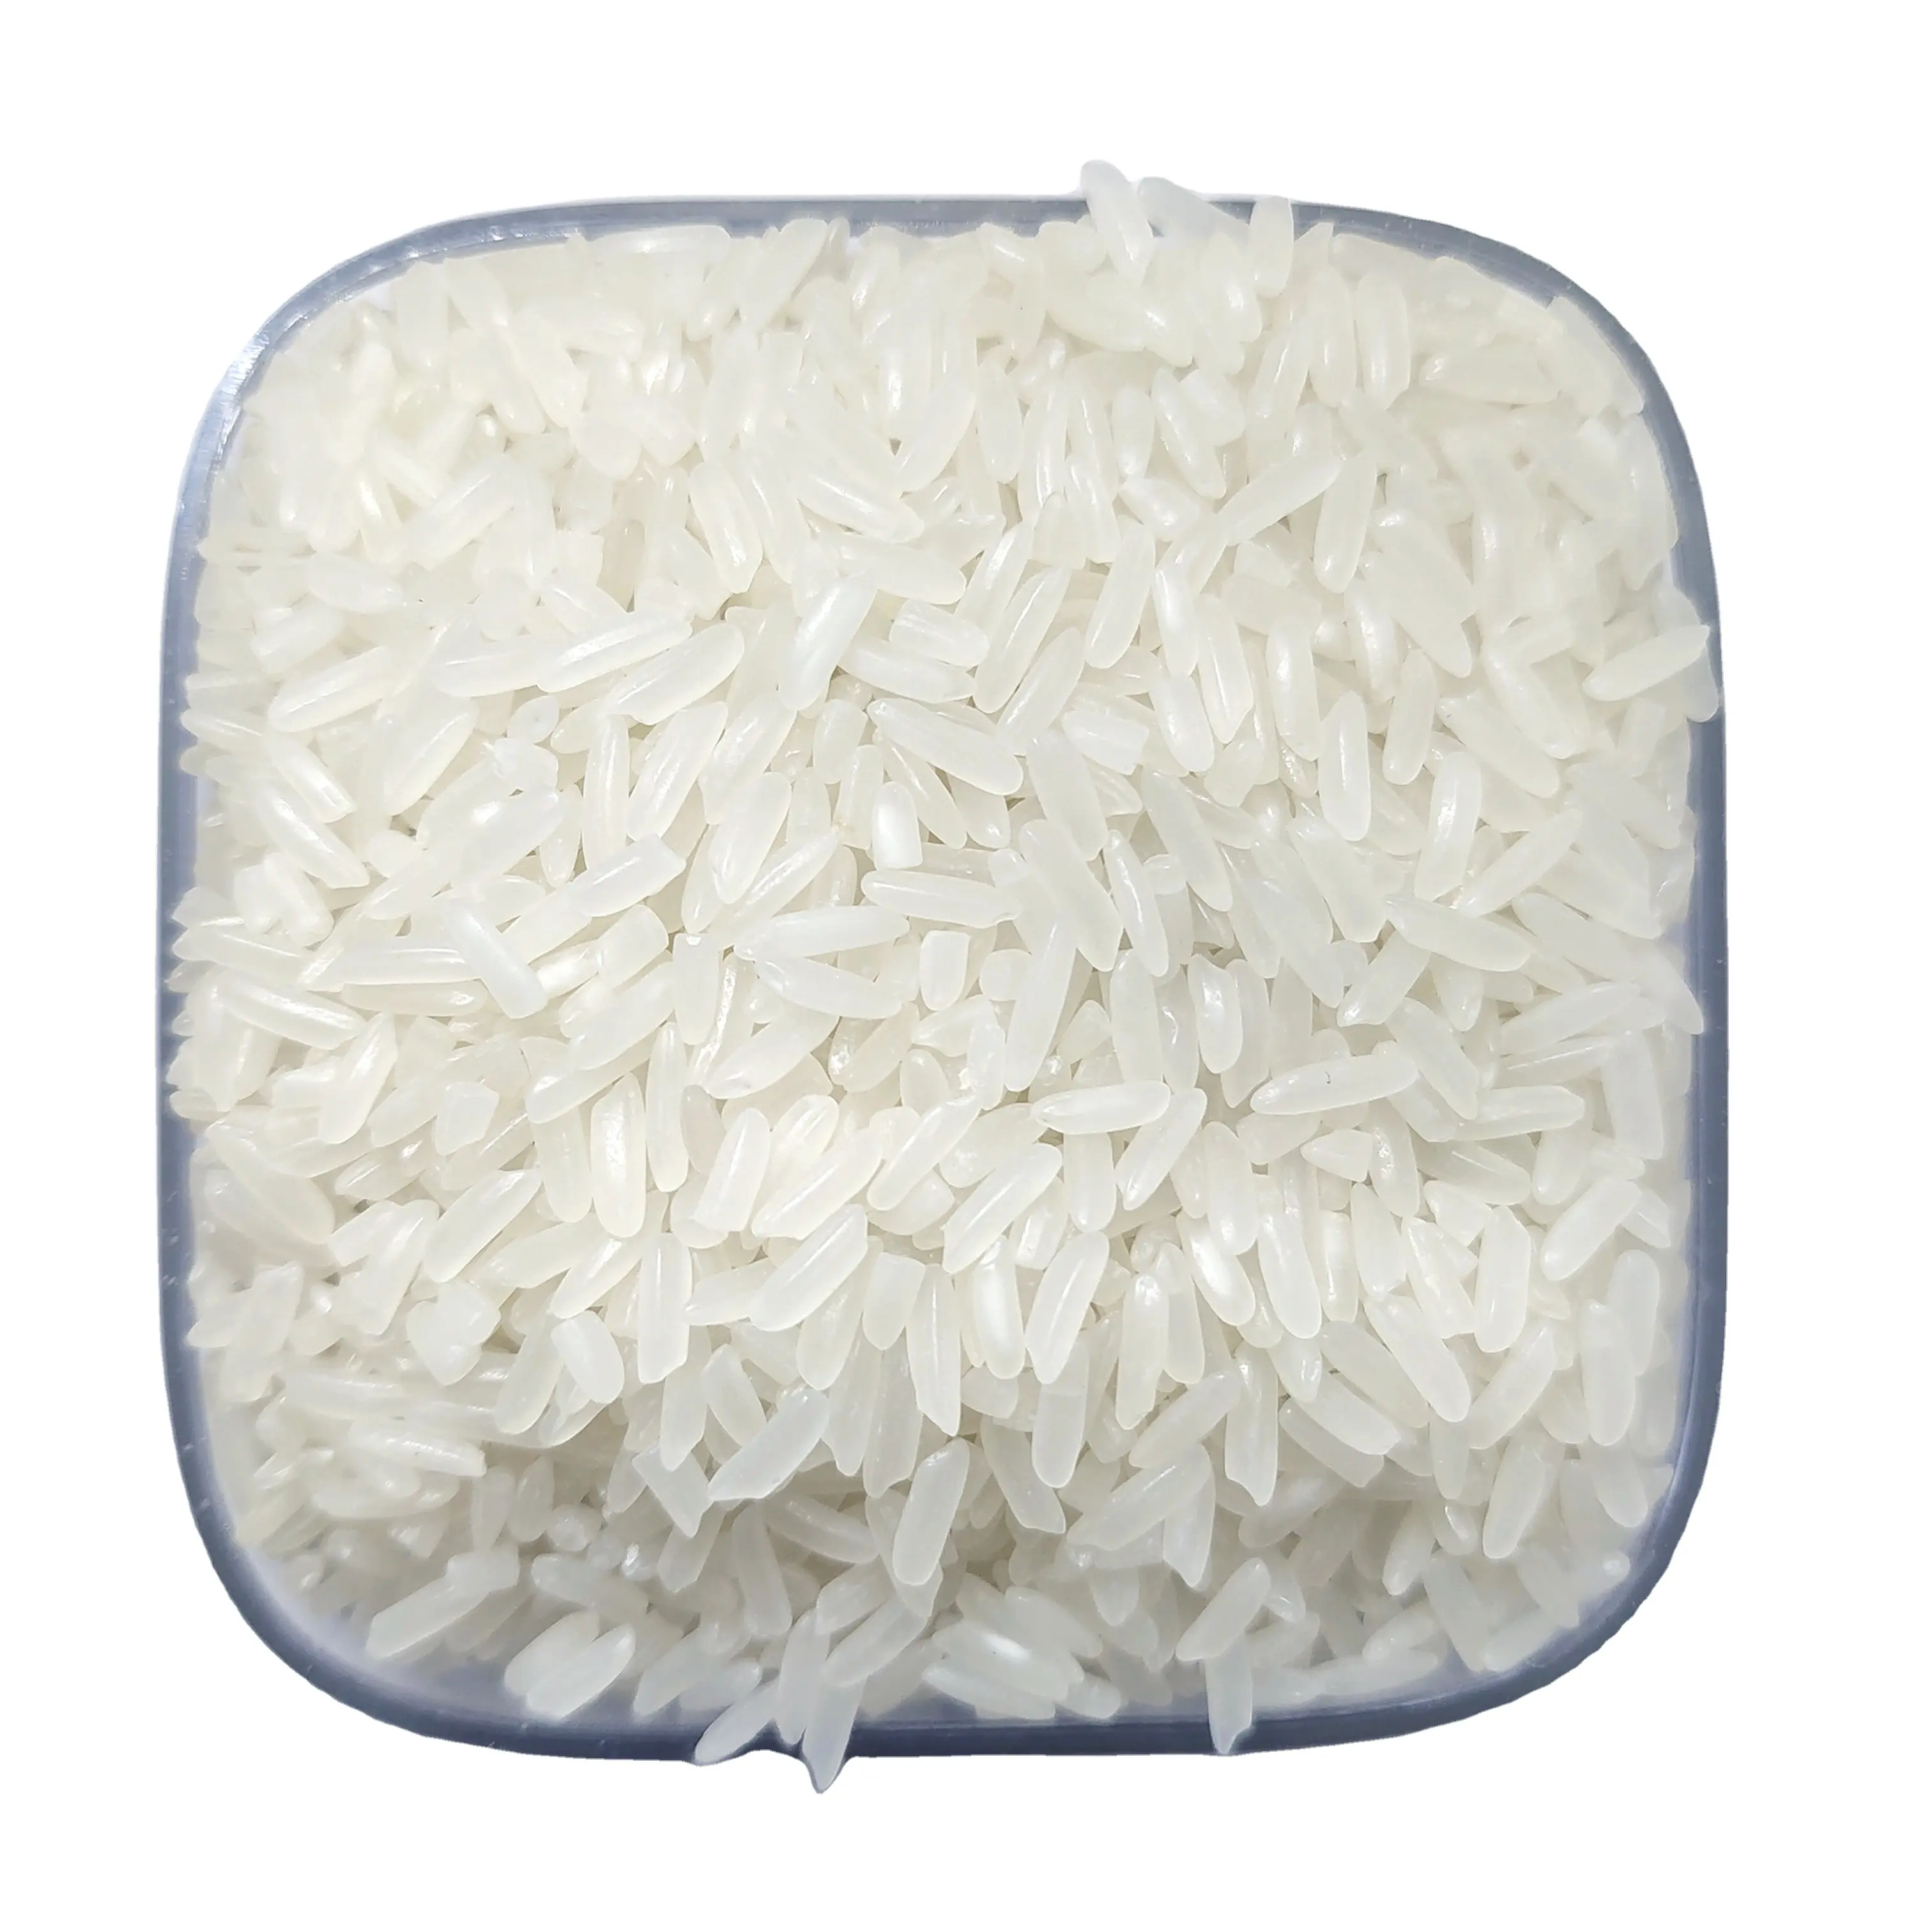 Ароматный рис. Длиннозернистый рис. Рис из Вьетнама в упаковке.